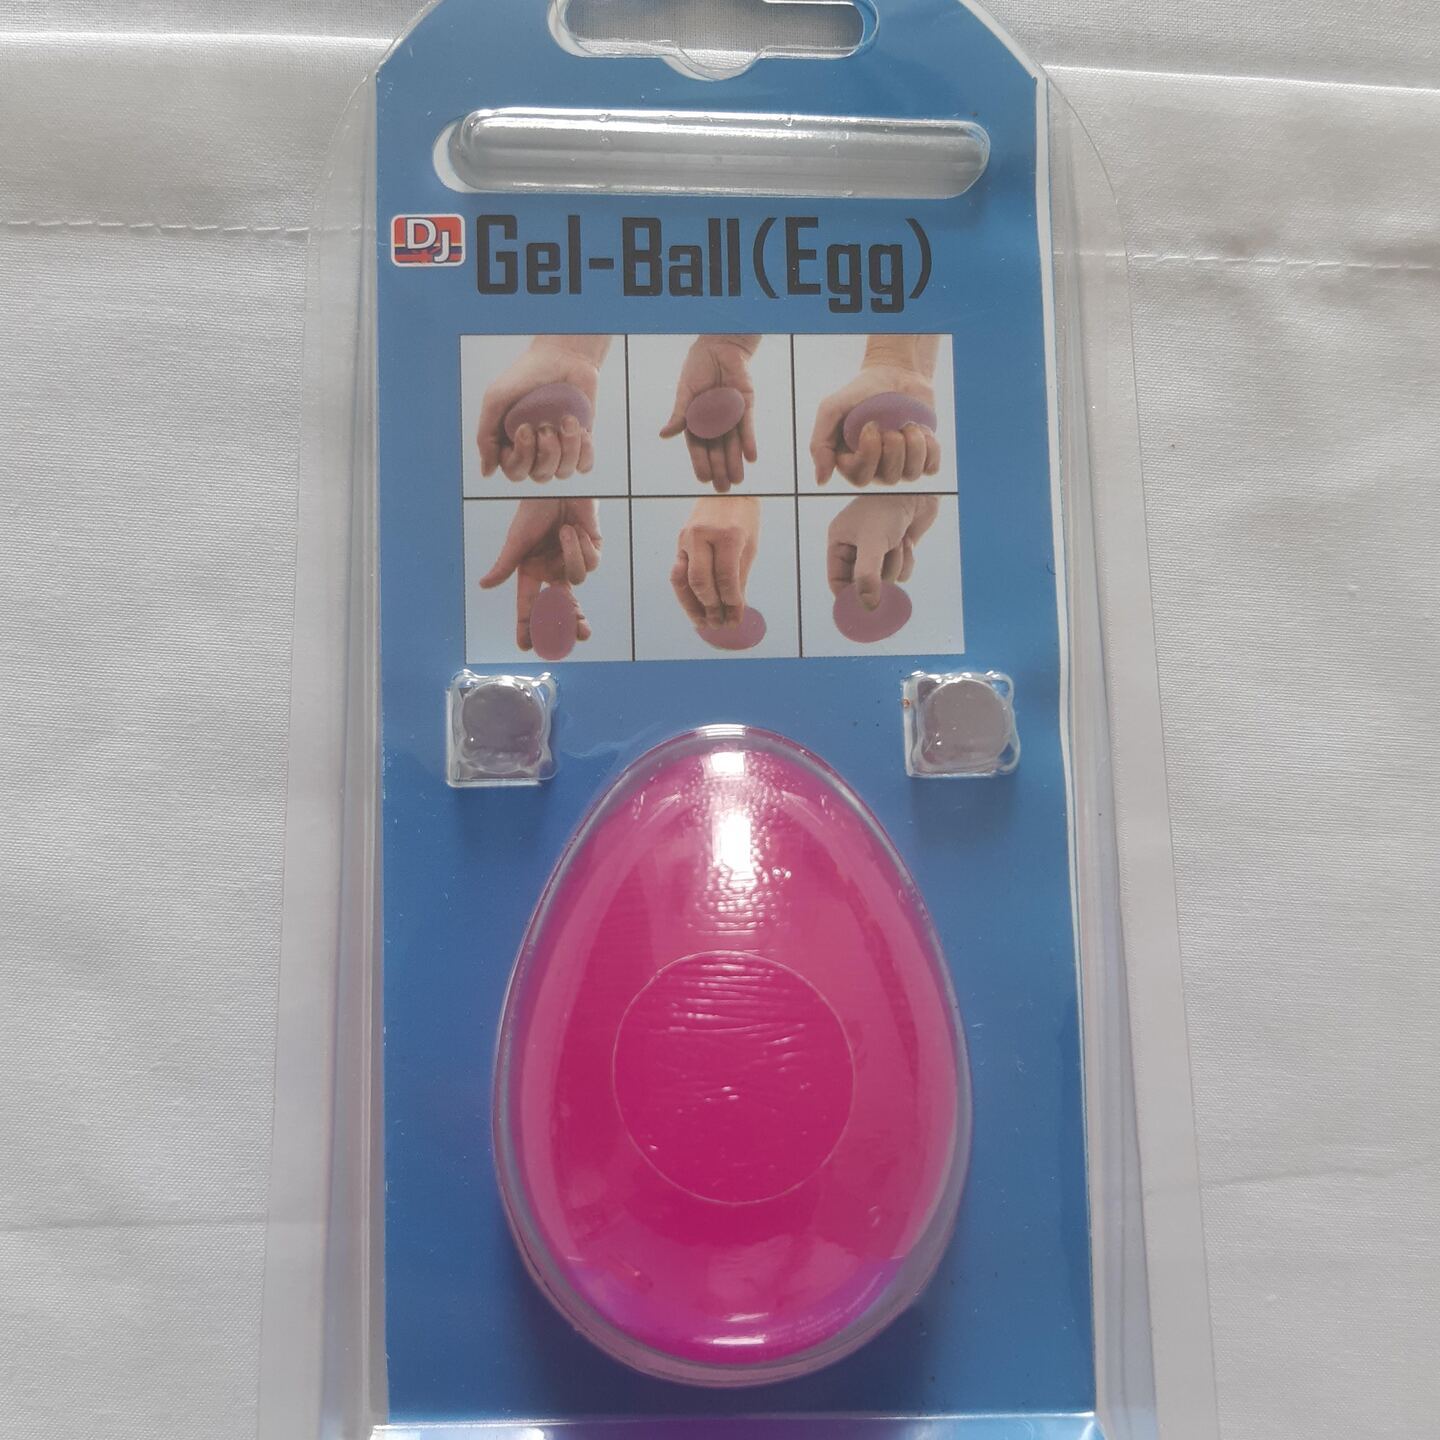 Gell-Ball-Egg